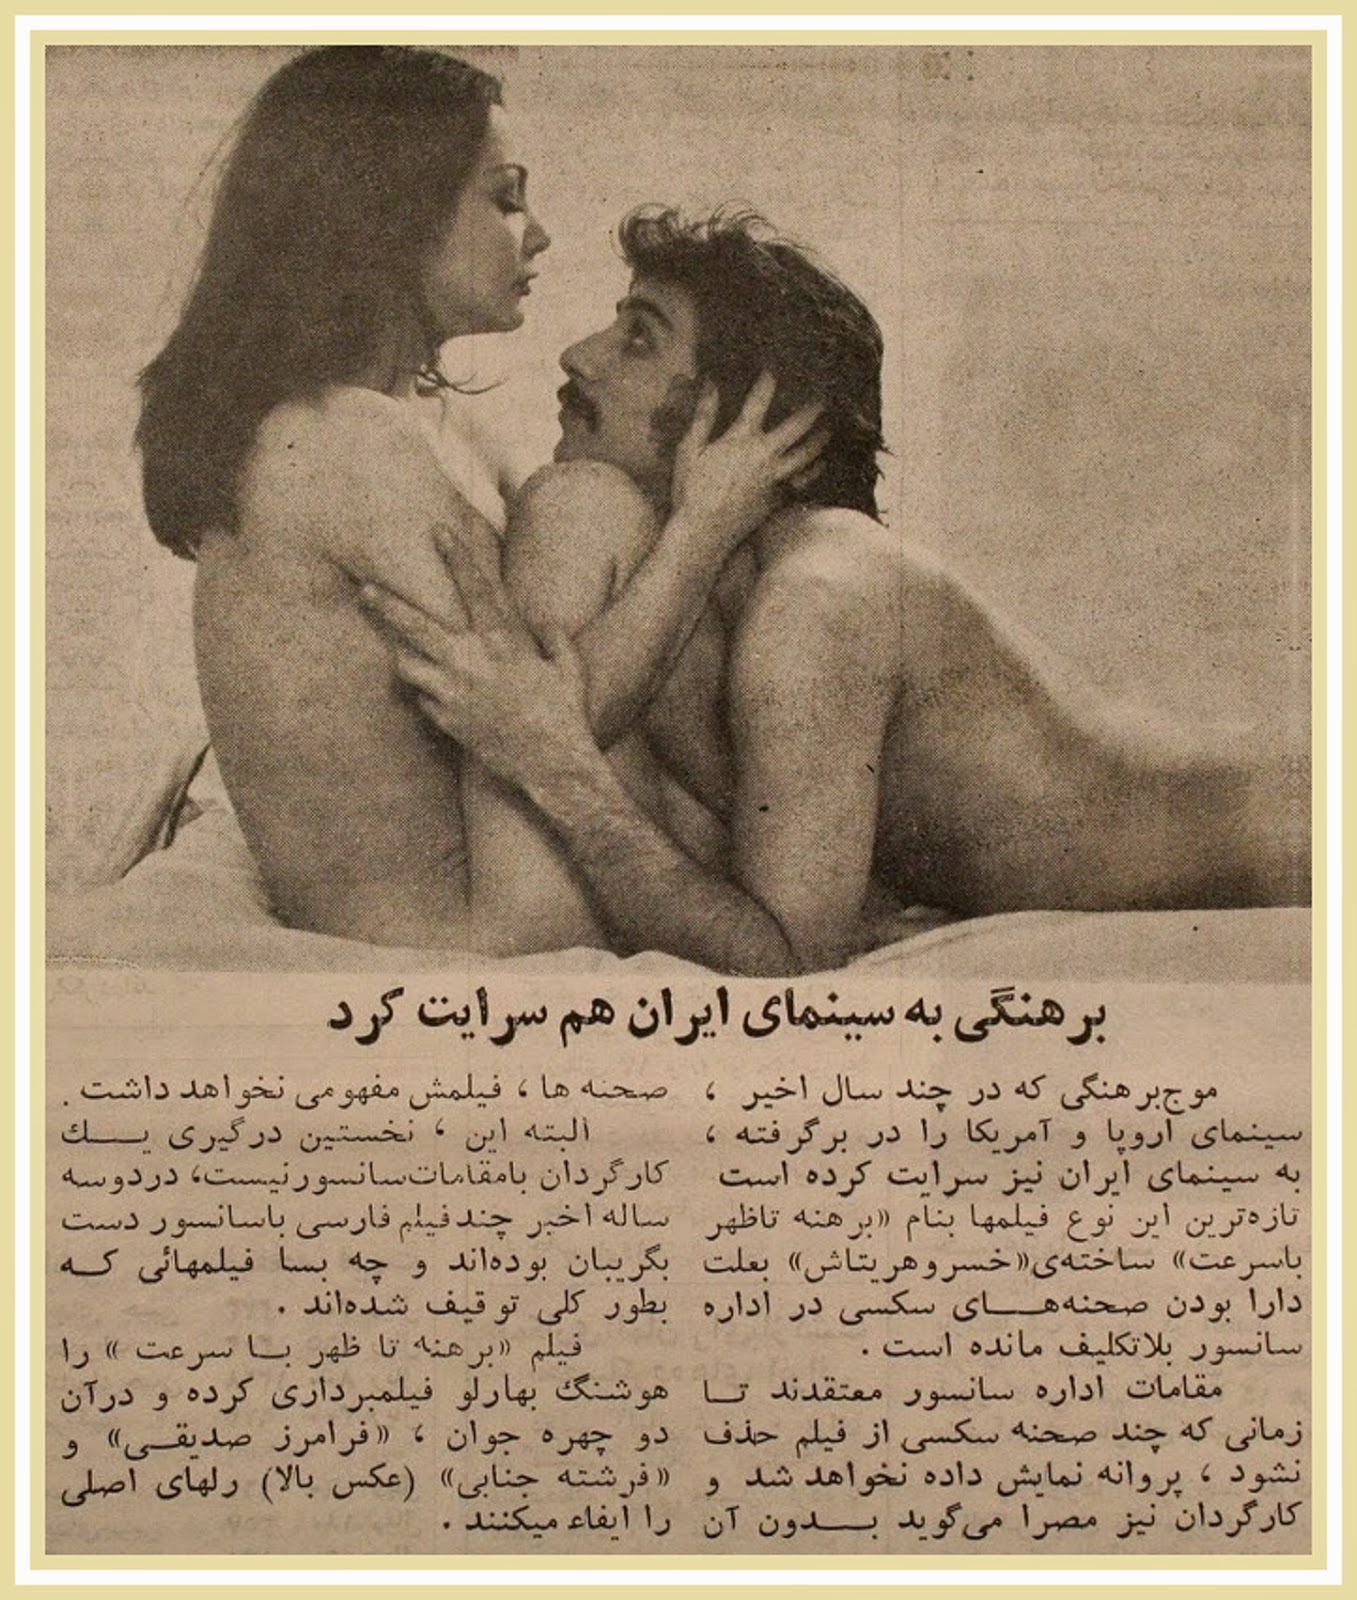 سکس ایران قدیمی